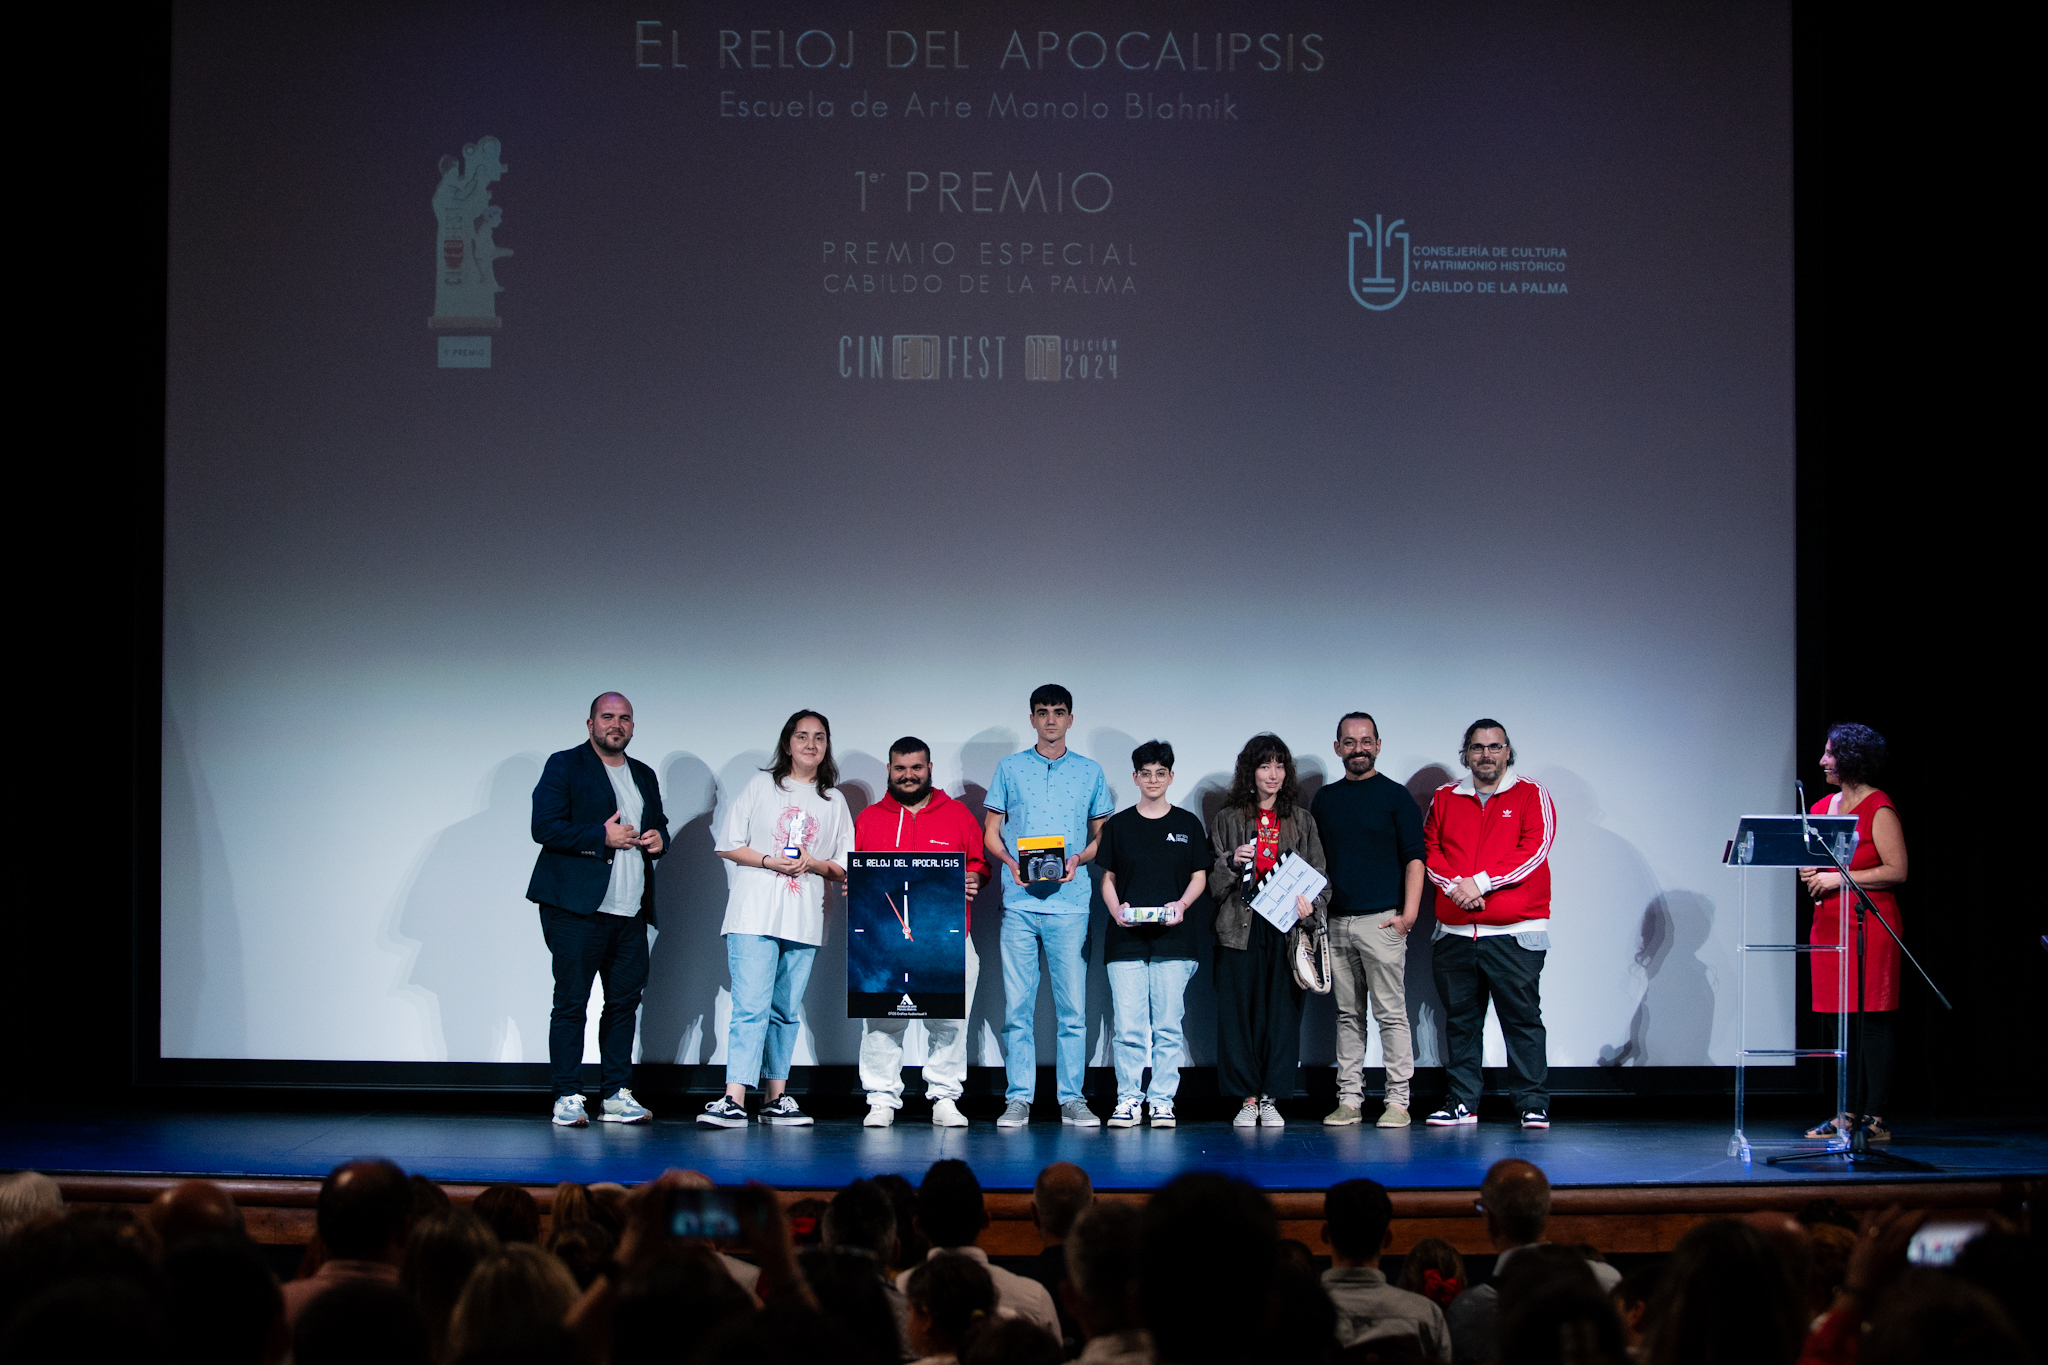 La Escuela de Arte Manolo Blahnik, Premio Especial del Cabildo de La Palma de Cinedfest 11 por ‘El reloj del apocalipsis’